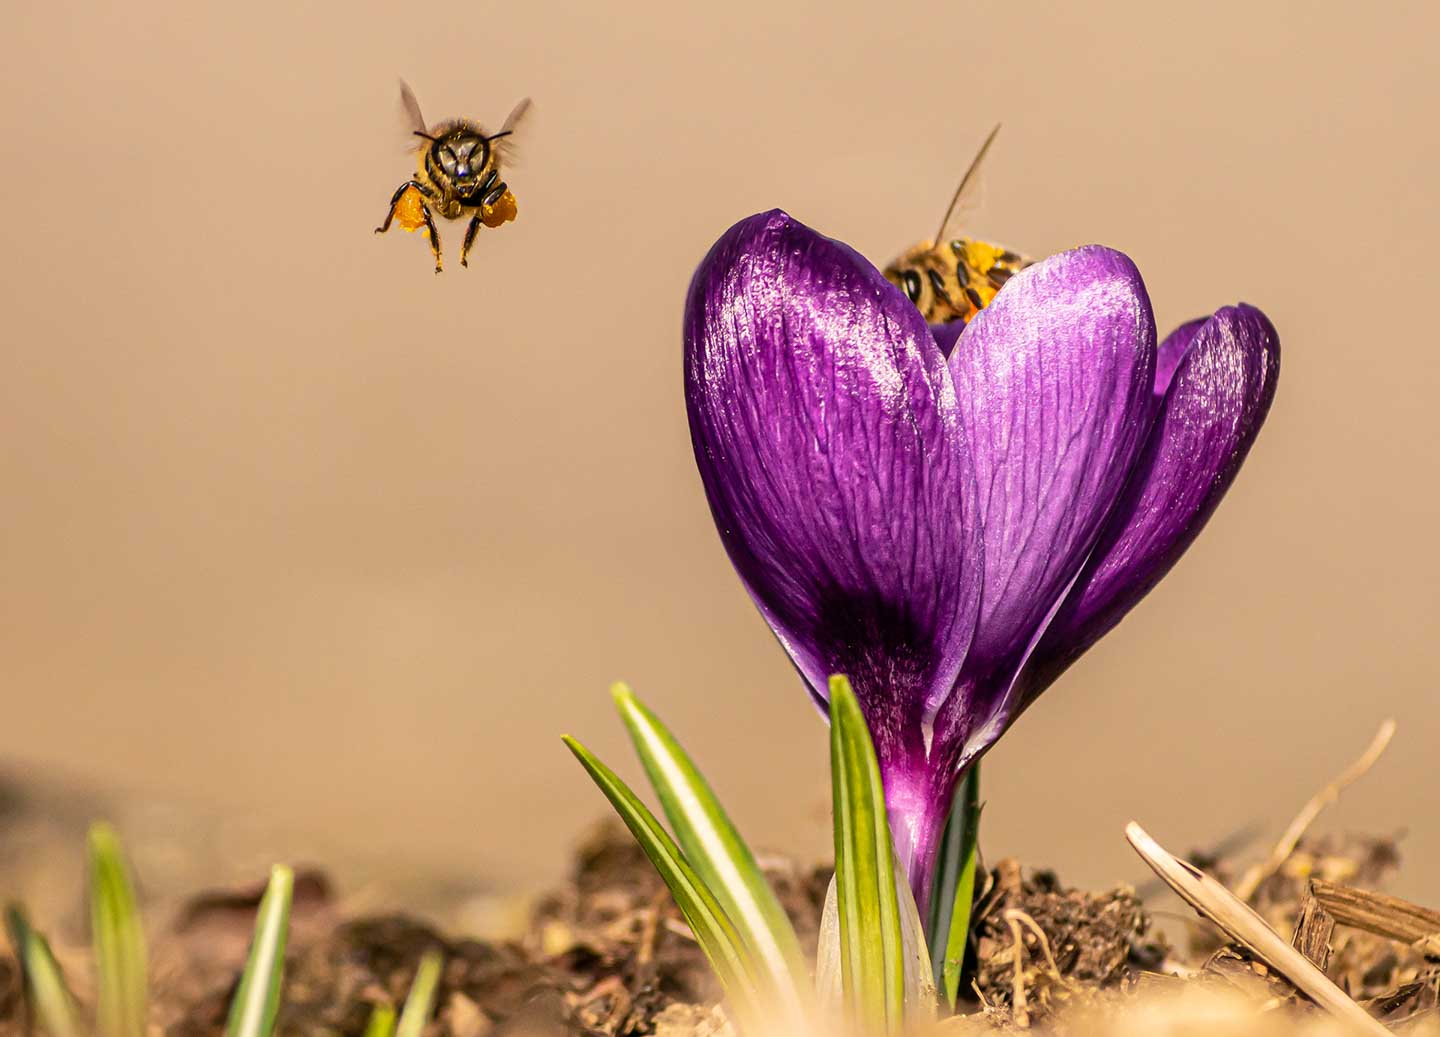 CJPOTY round 3 (mars 2023) image présélectionnée - crocus avec abeilles